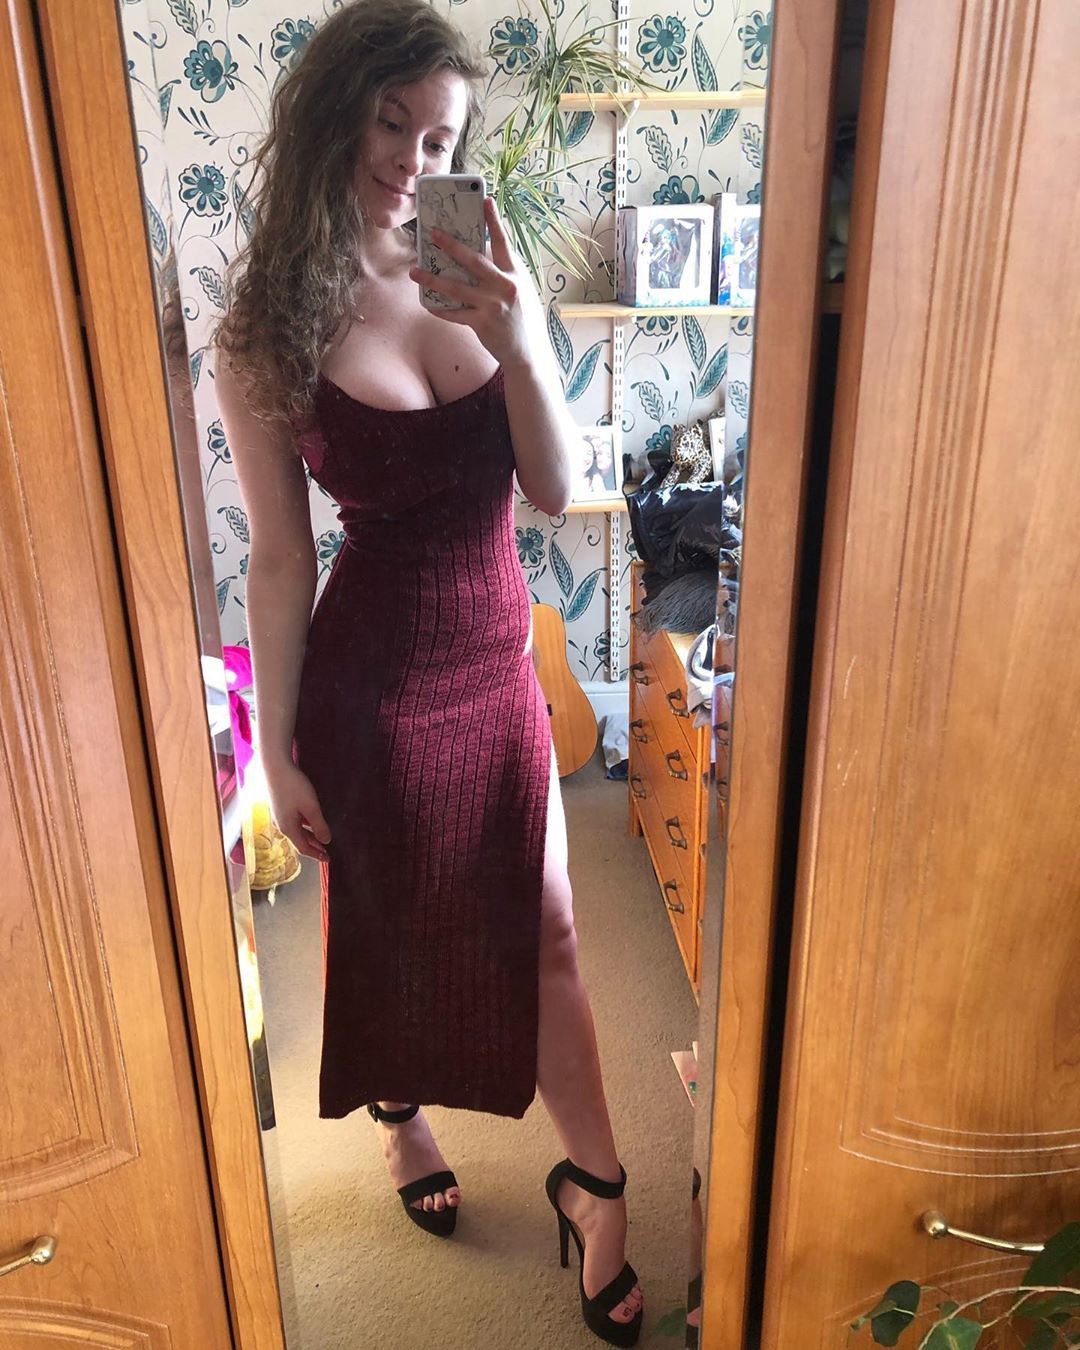 tits tight dress selfie xxx photo